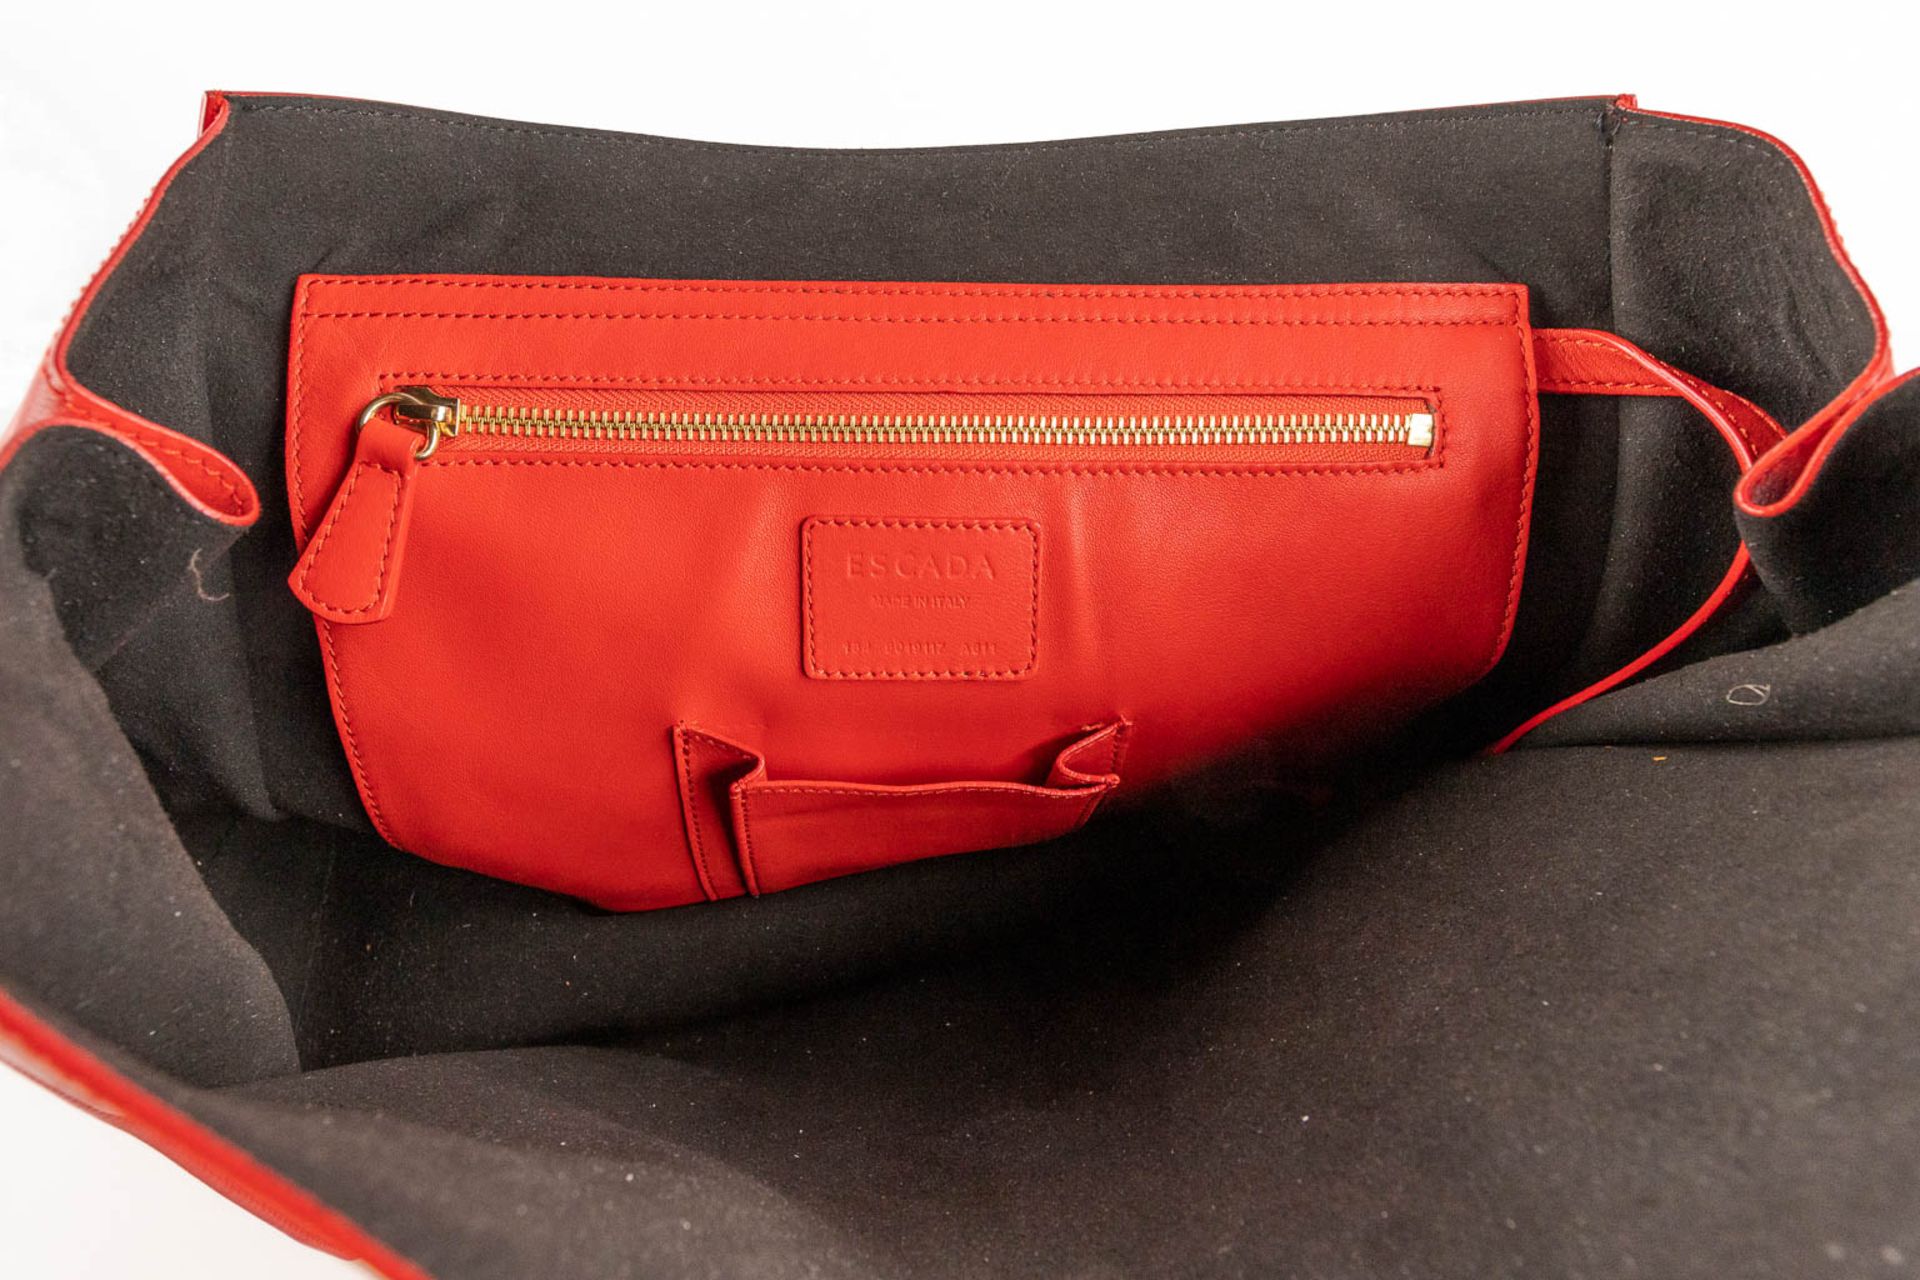 Escada, a handbag made of red leather. (W:33 x H:28 cm) - Image 15 of 17